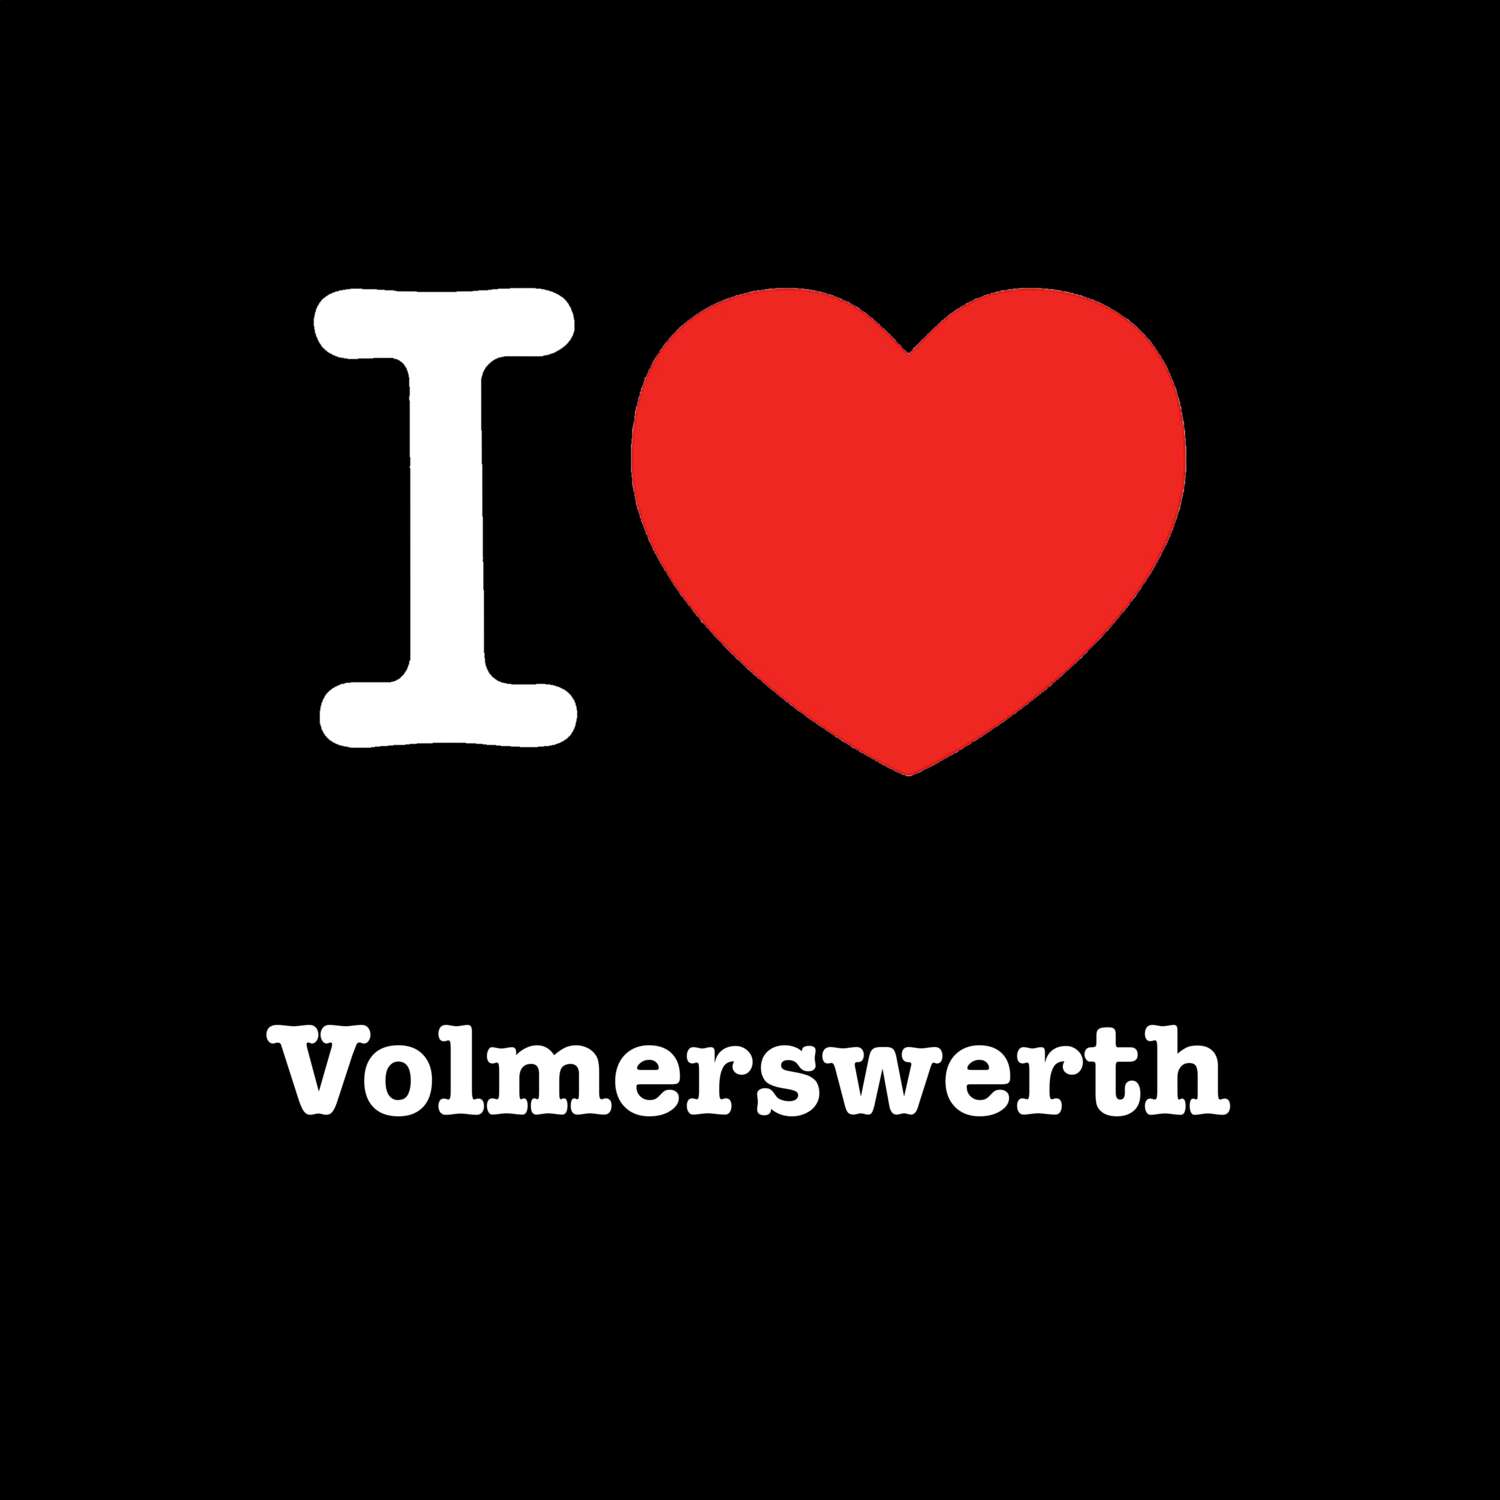 Volmerswerth T-Shirt »I love«